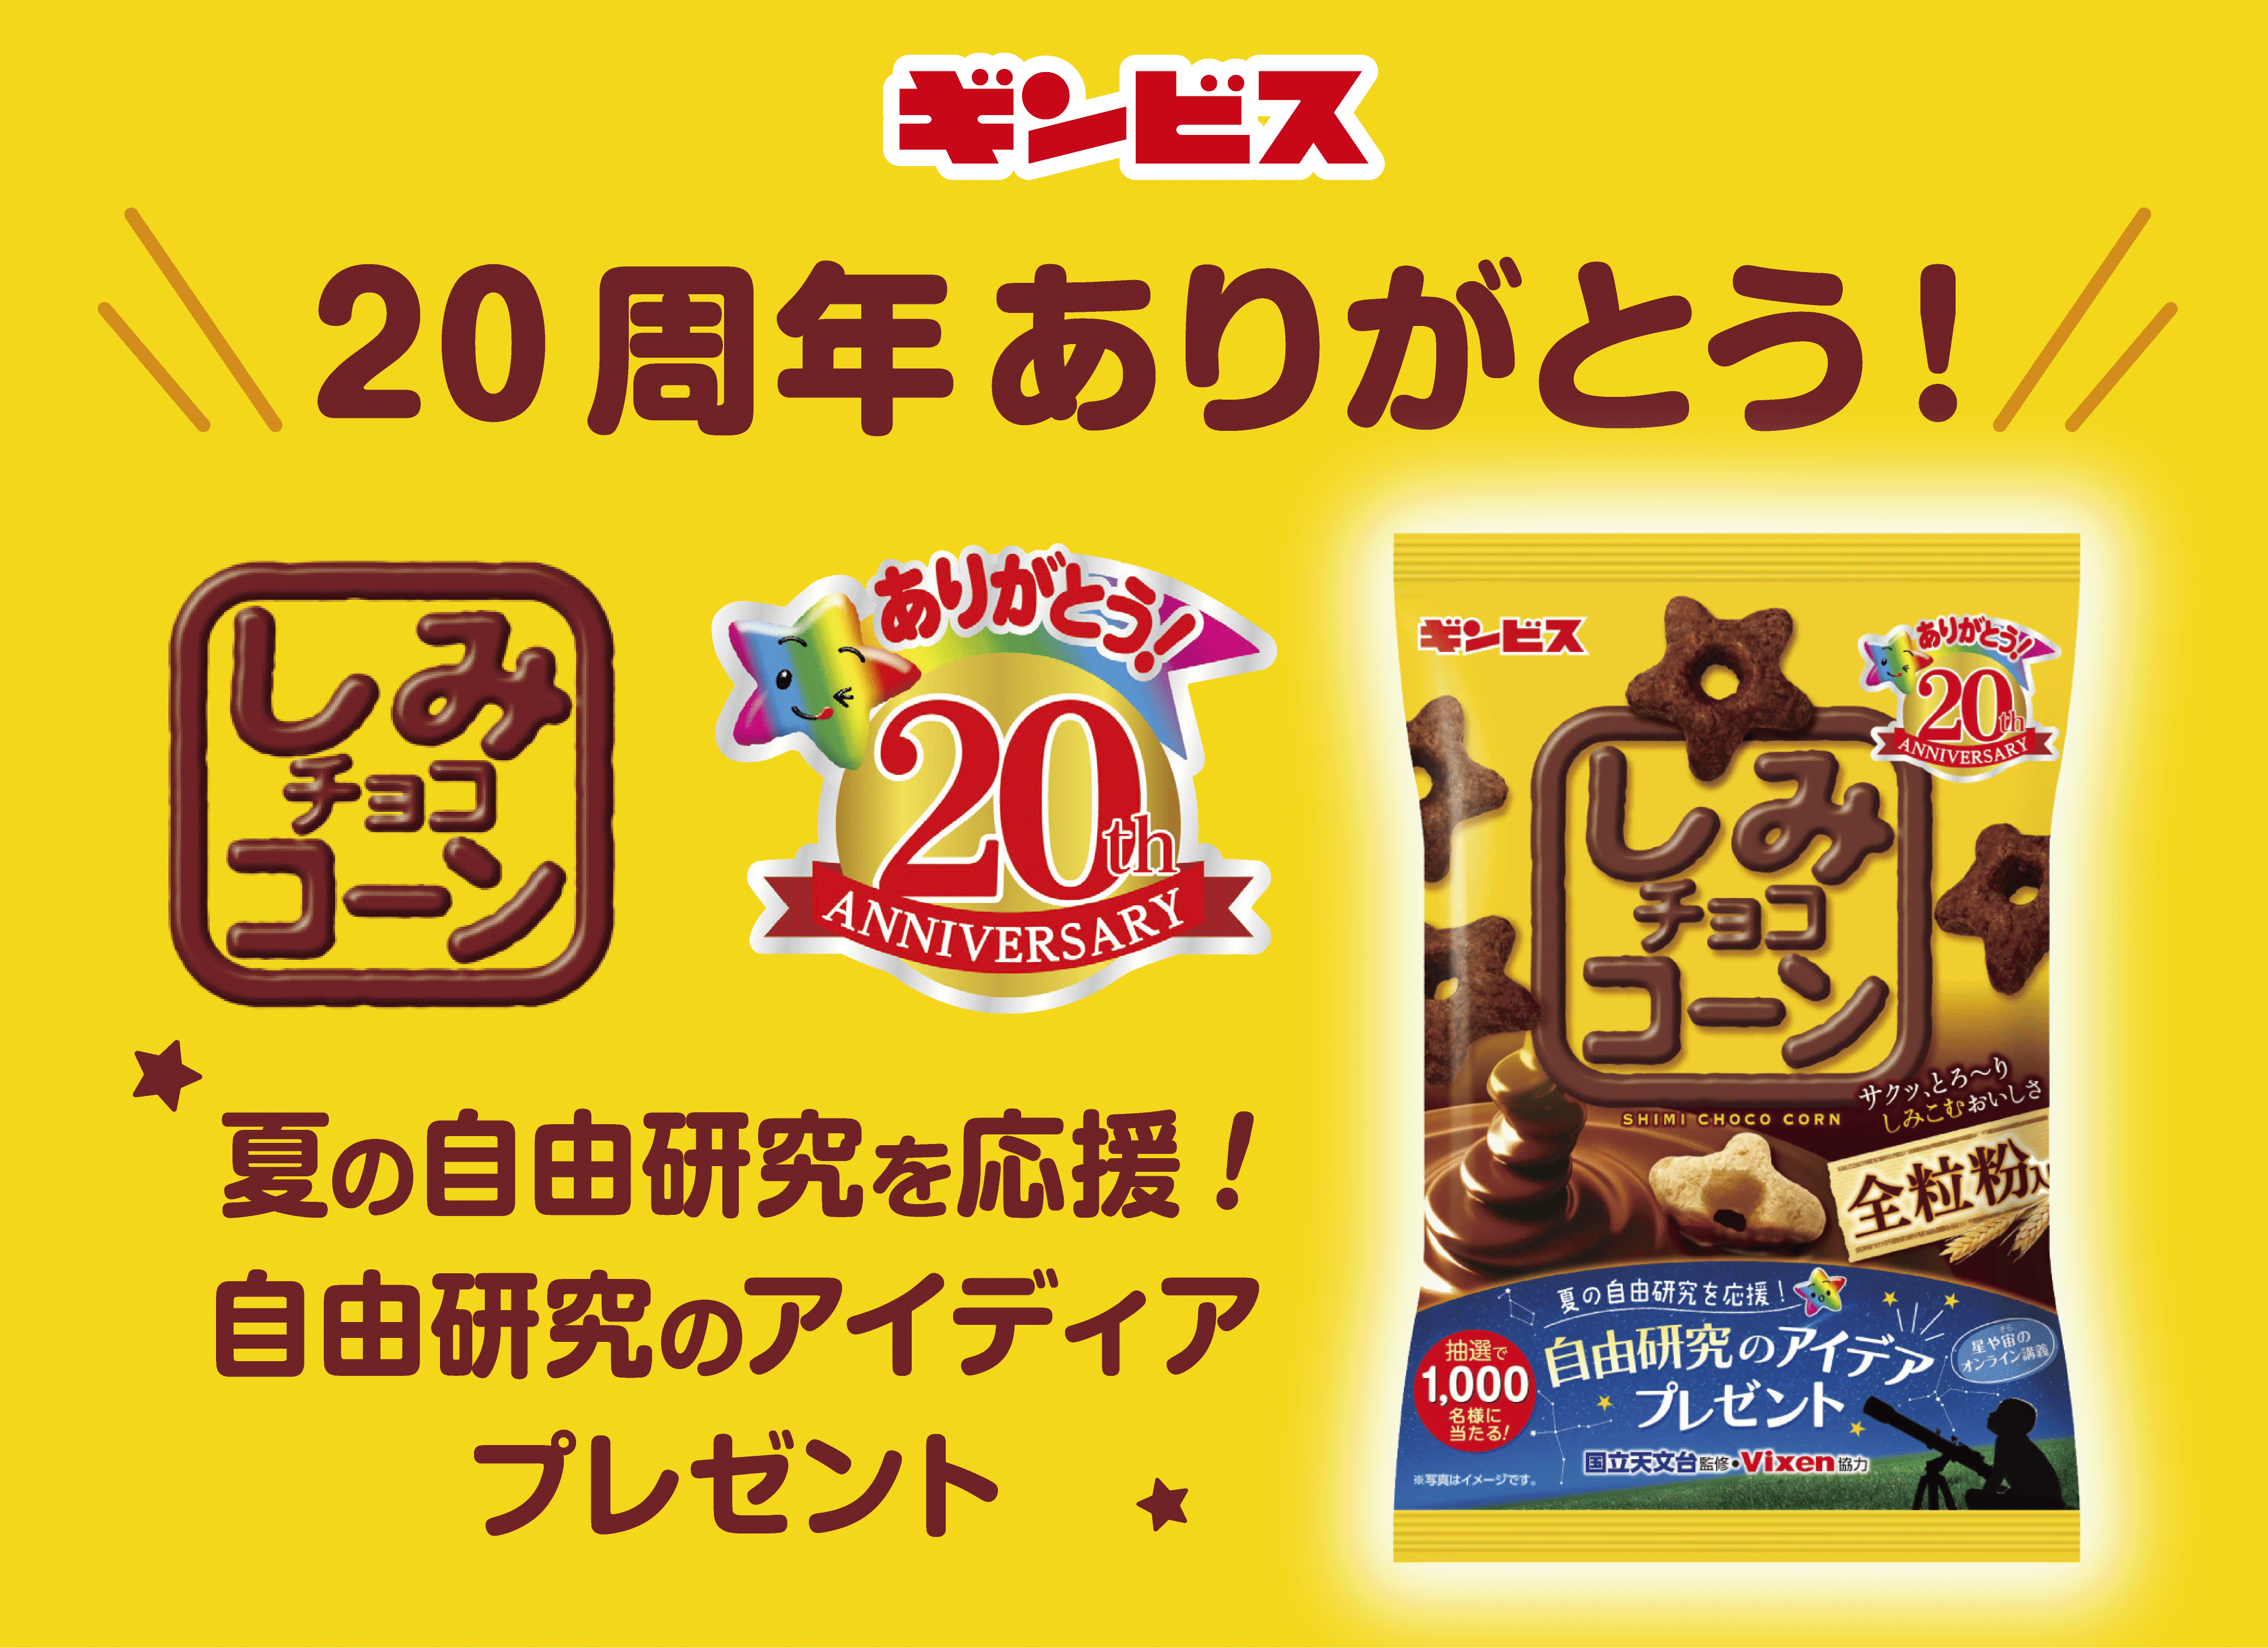 夏休みに向け、発売20周年「しみチョココーン」が
夏の自由研究を応援！
秋には「堂島ロール」とのコラボ商品を発売！